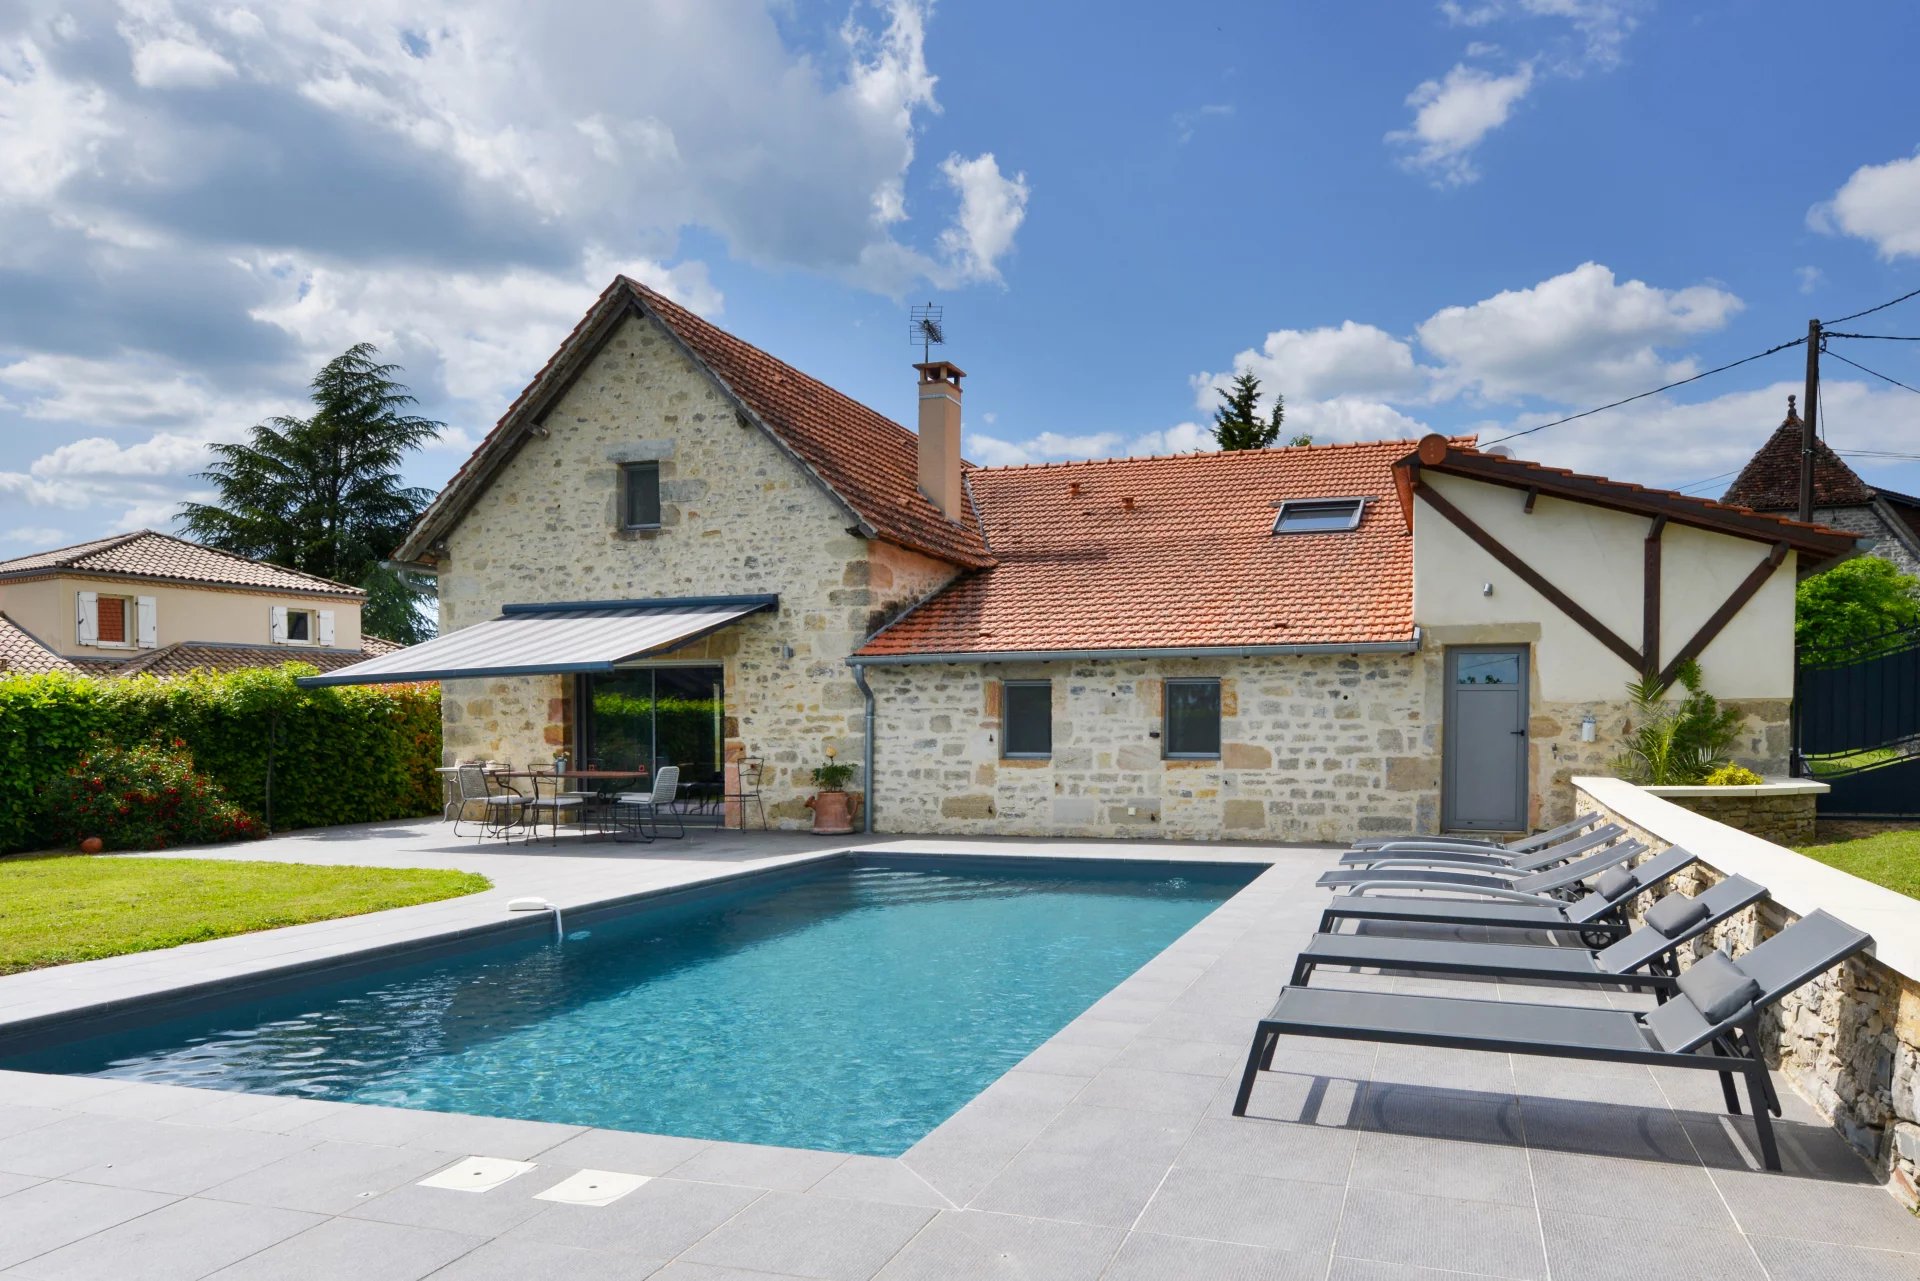 Une spacieuse maison en pierre avec piscine dans un hameau tranquille